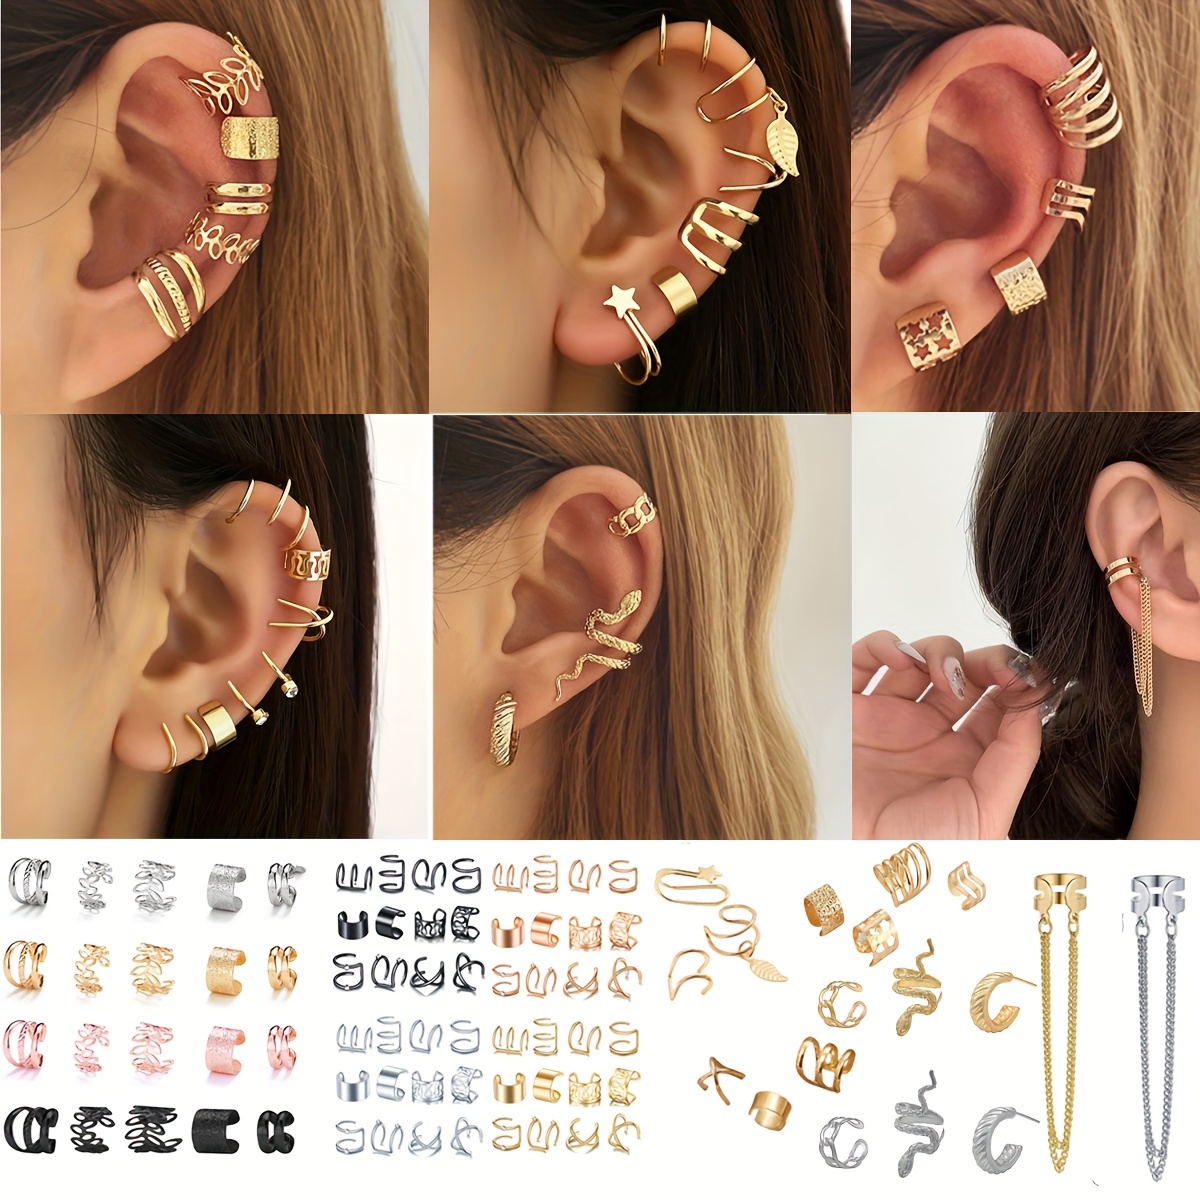 5Pcs Ear Cuff Earrings Non-Pierced Wrap Clip On Punk Rock Gold Cuff Jewelry  Gift